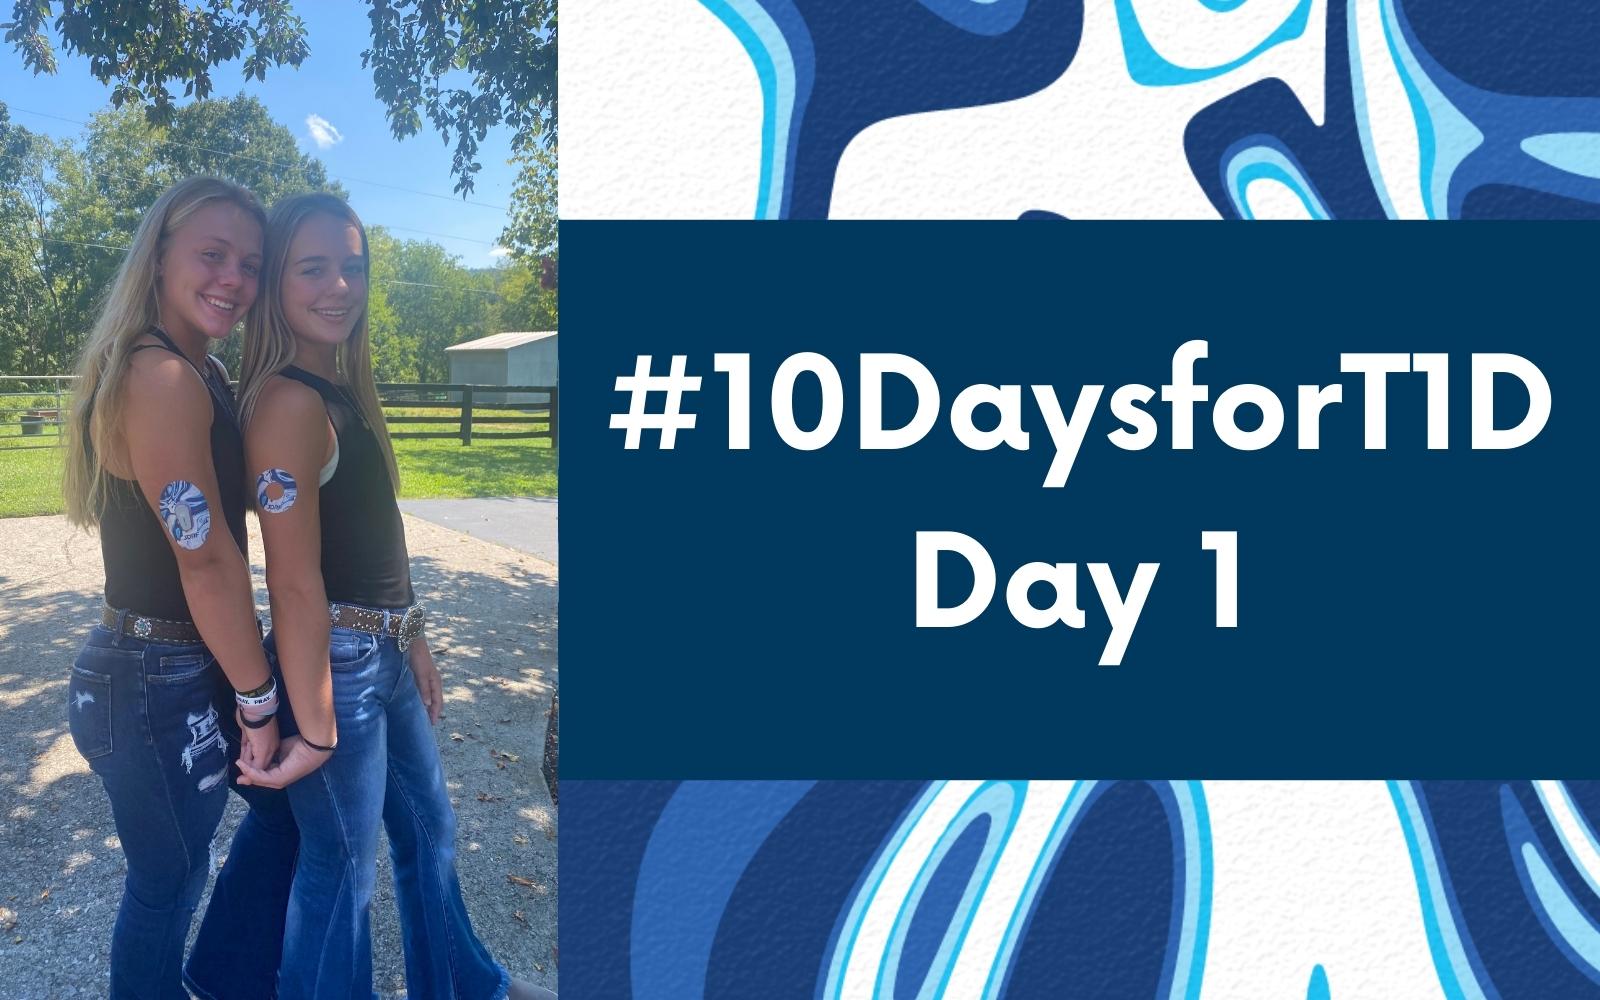 Day 1 - #10DaysforT1D Challenge